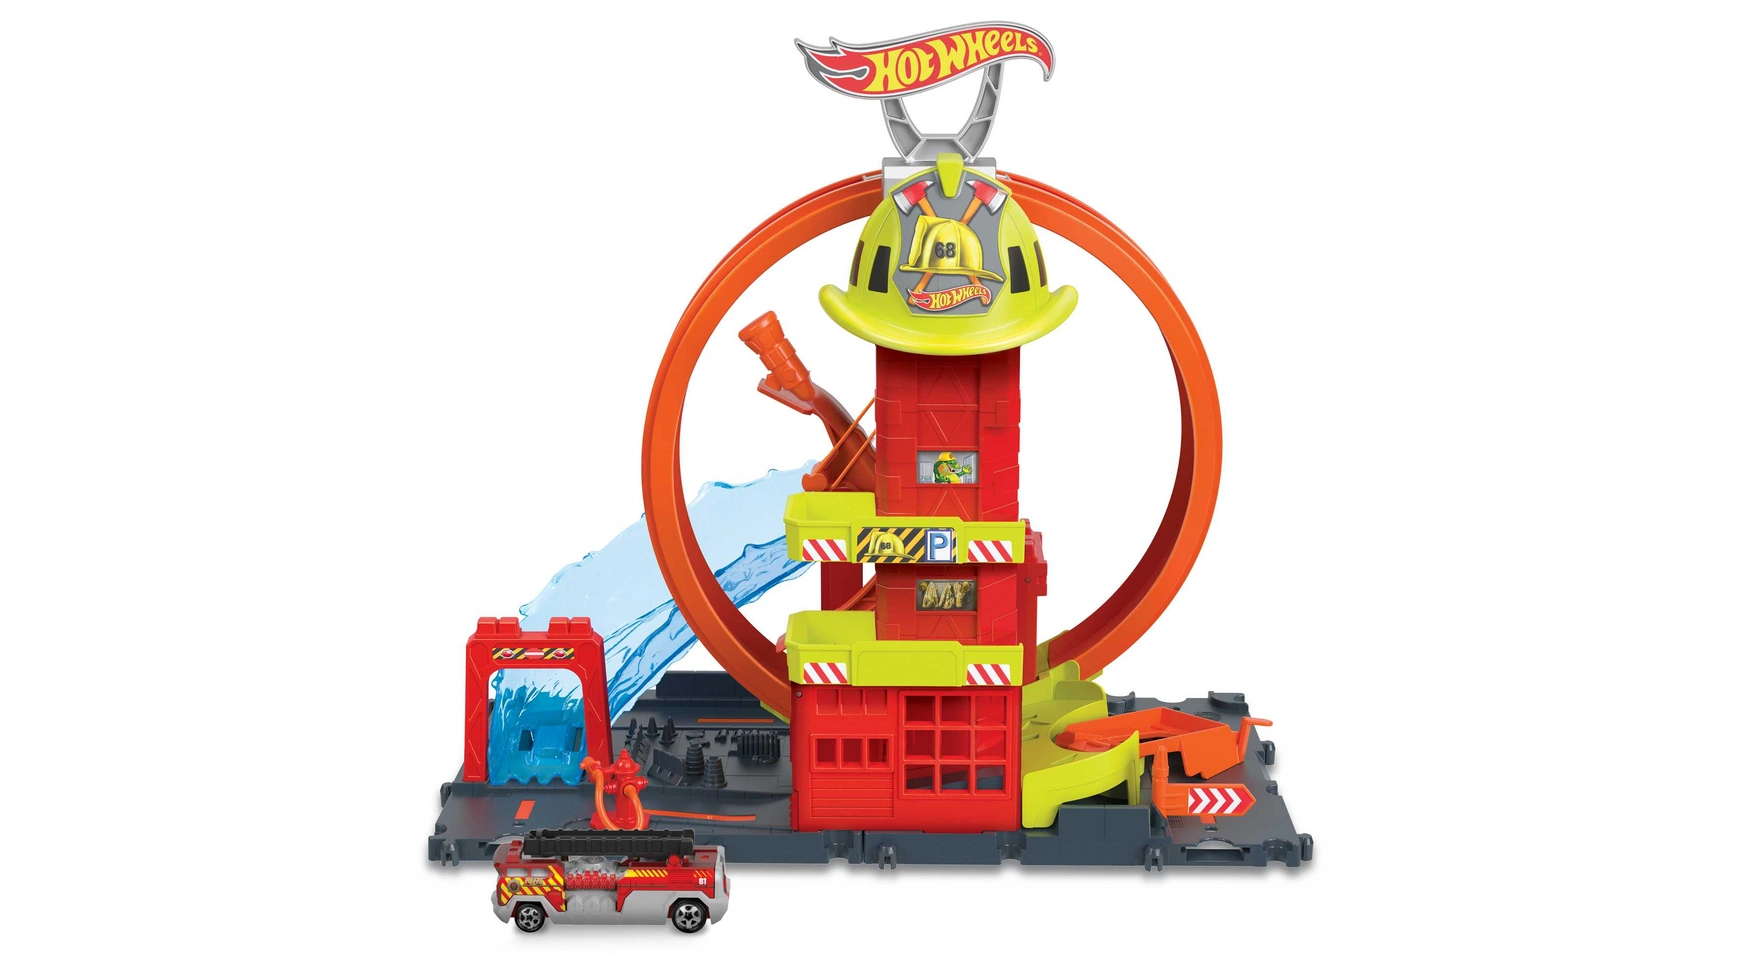 Hot wheels city super looping пожарная станция Mattel busy fire station